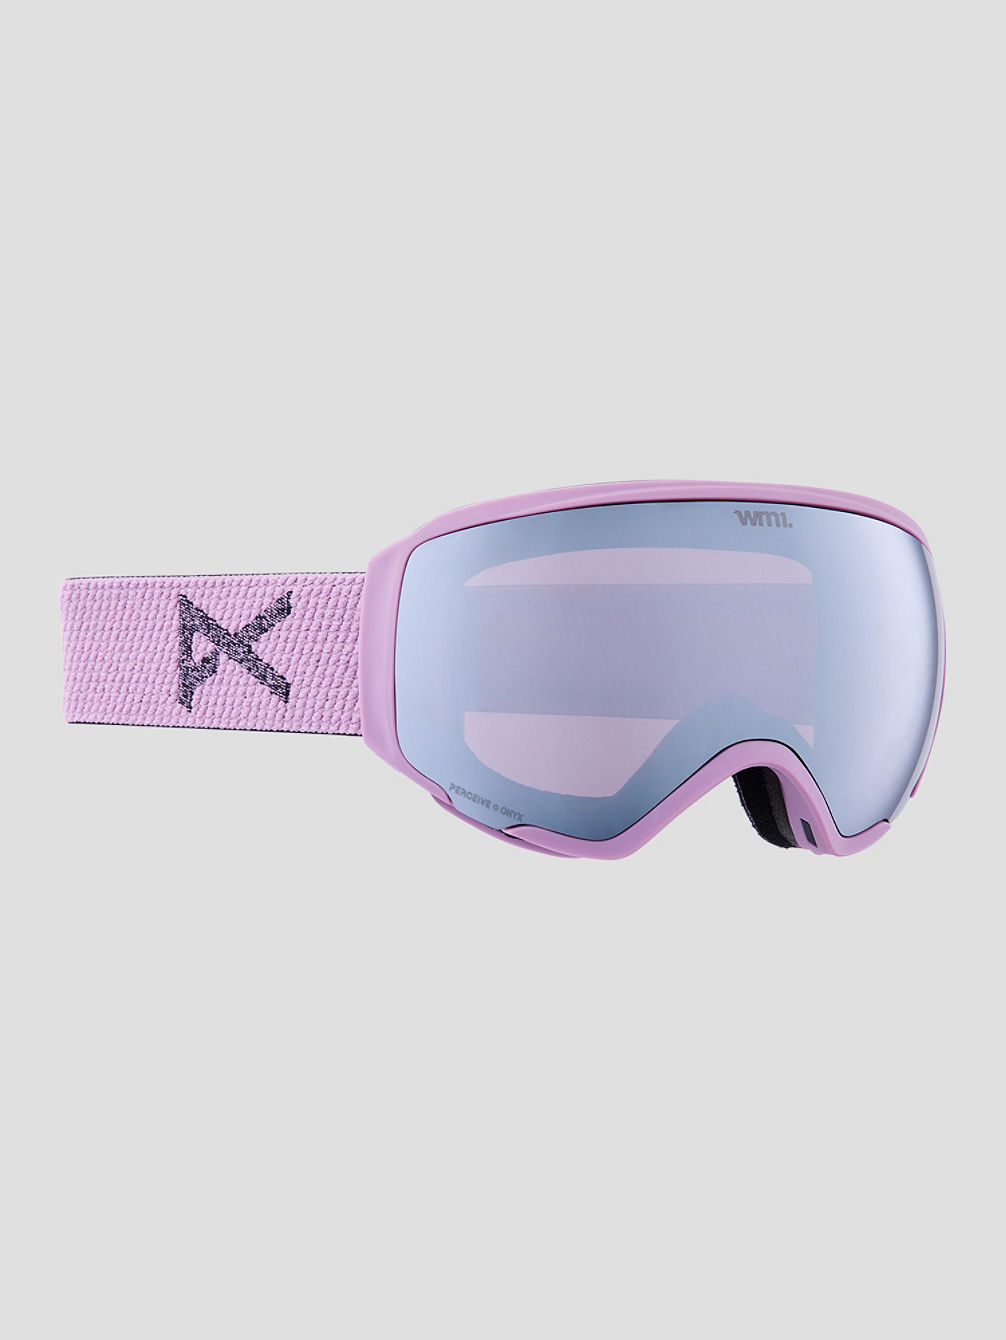 WM1 MFI Purple (+Bonus Lens) Goggle